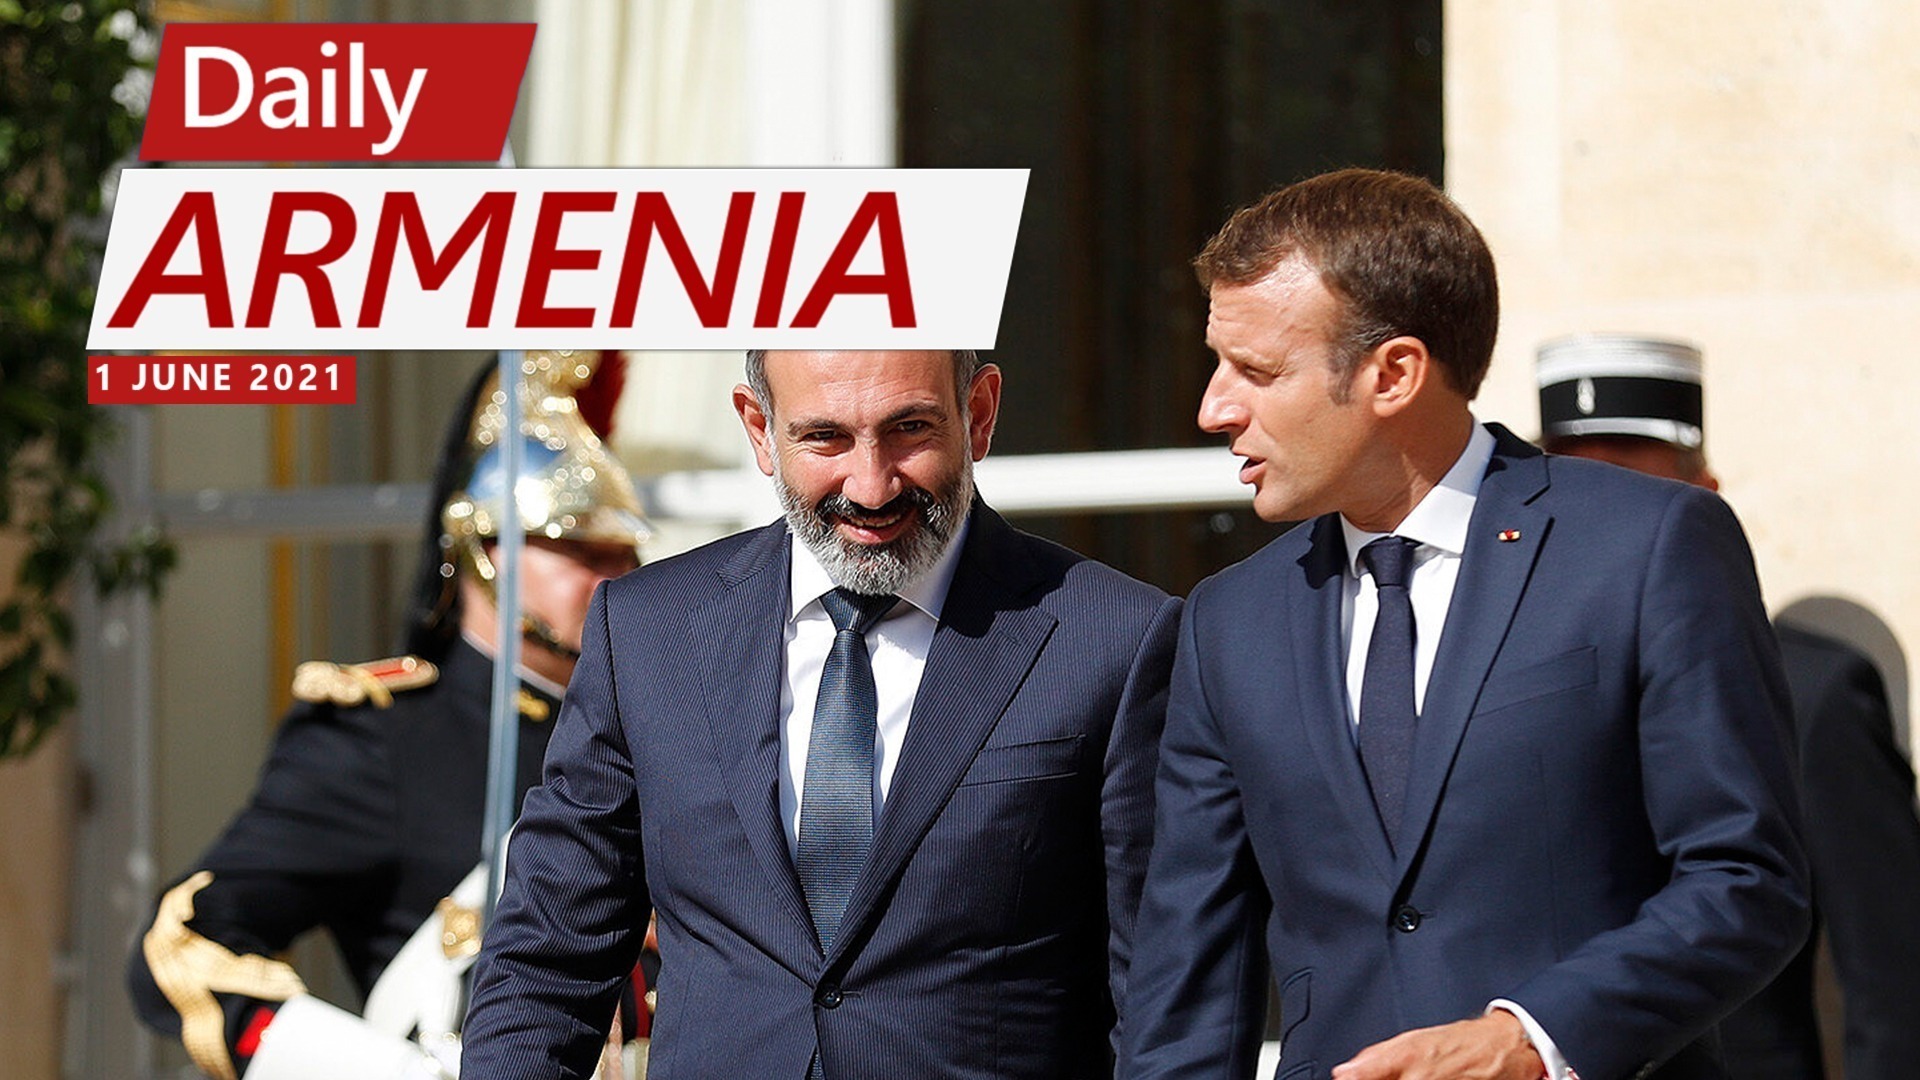 Pashinyan and Macron Hold High Level Talks at Élysée Palace in Paris